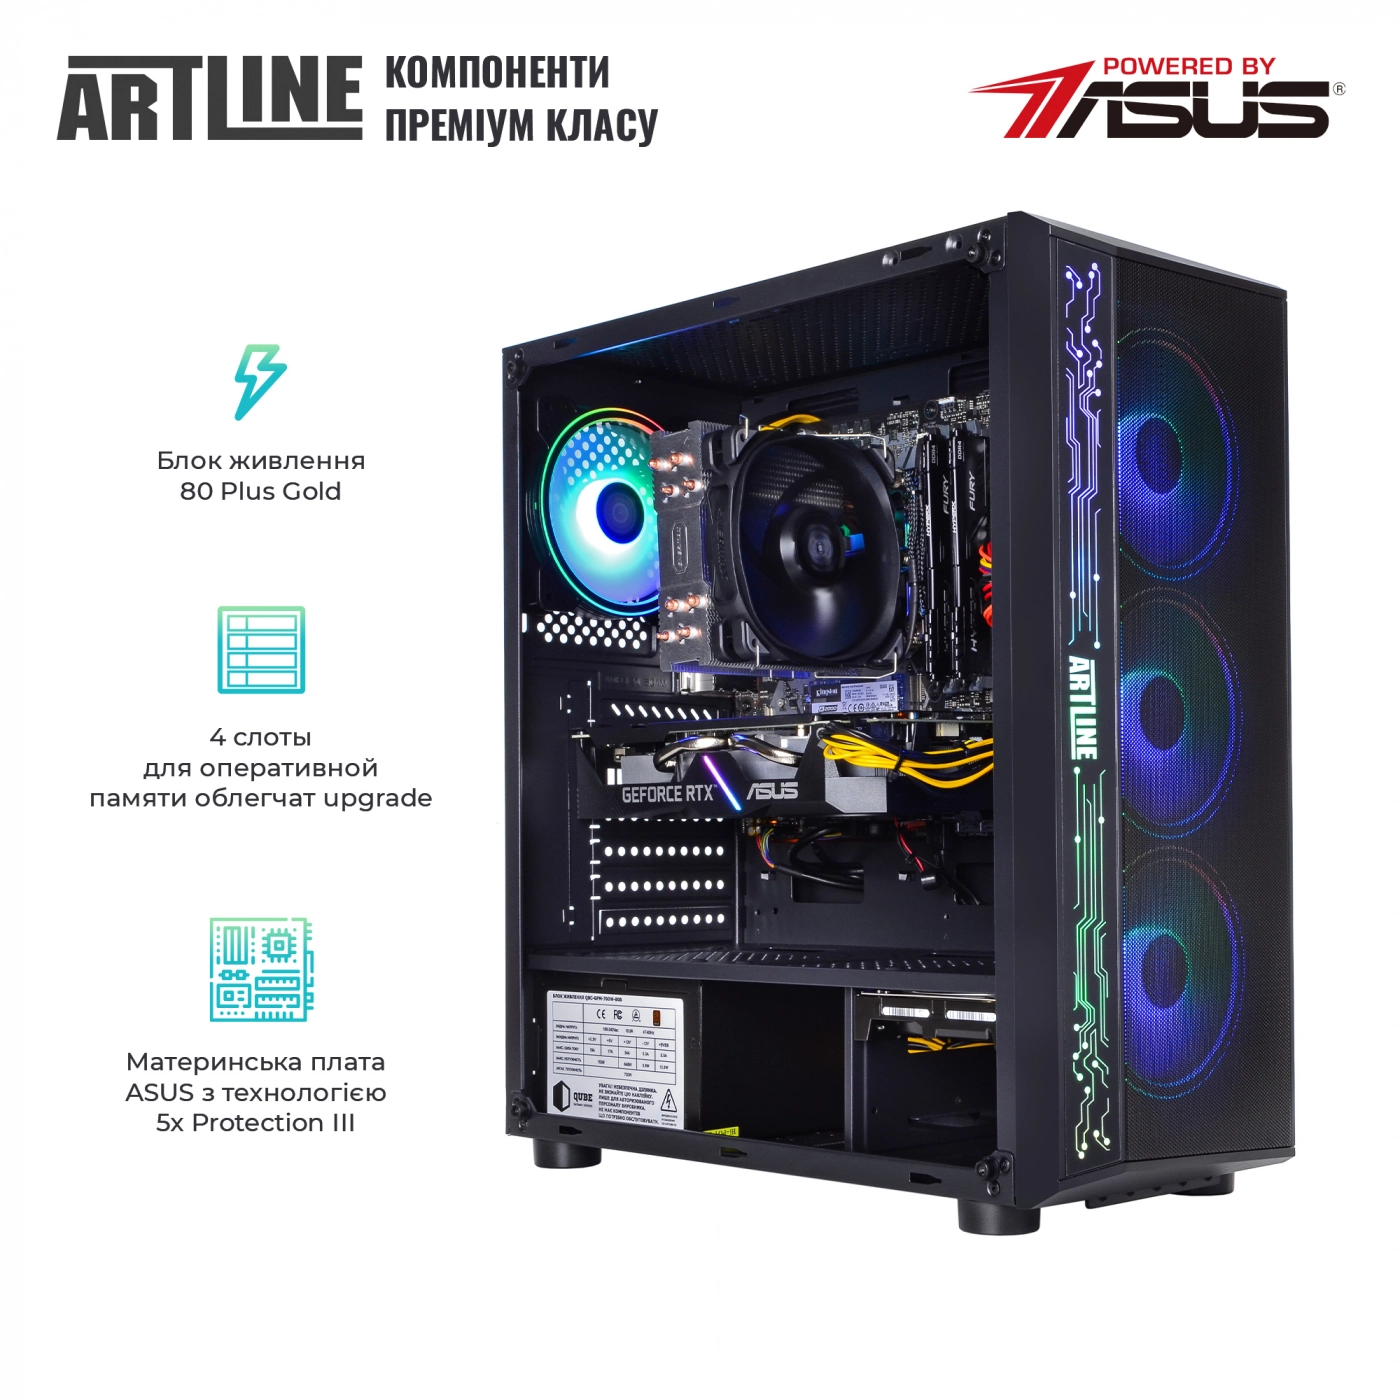 Купить Компьютер ARTLINE Gaming X57v38 - фото 2